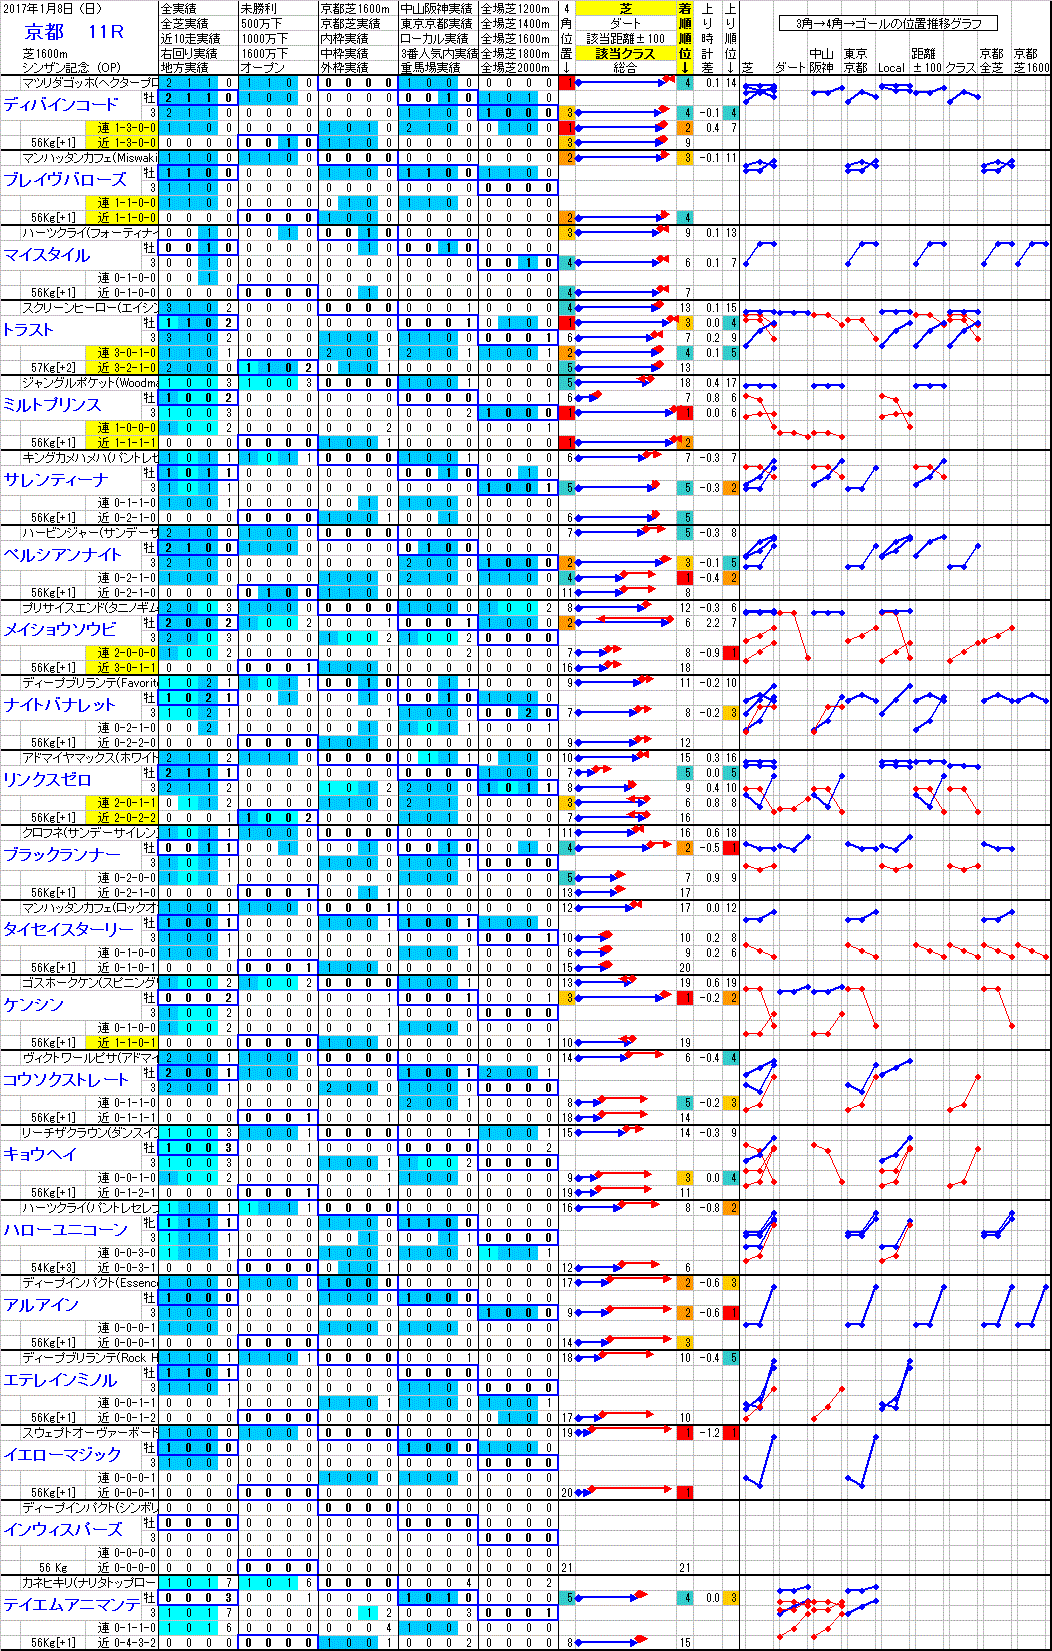 京都 2017年1月8日 （日） ： 11R － 分析データ